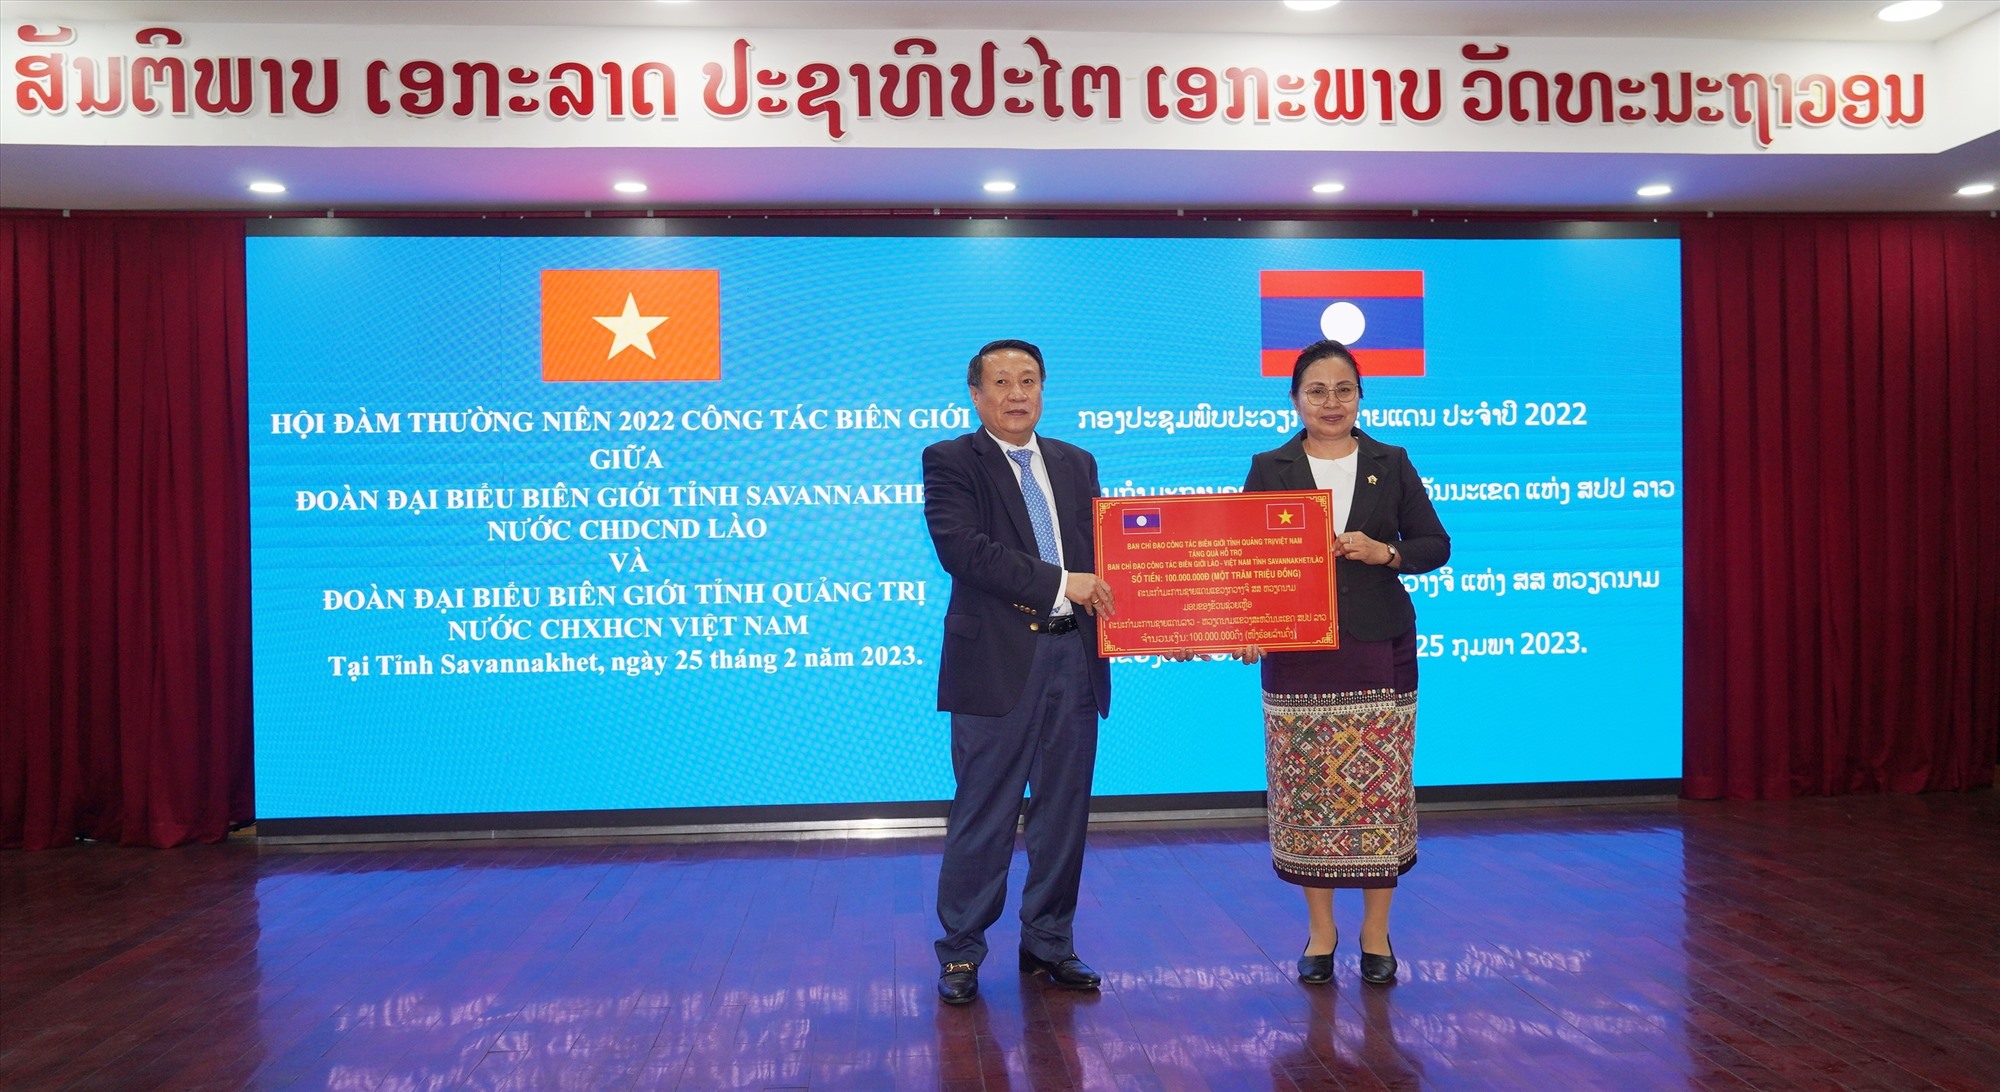 Phó Chủ tịch Thường trực UBND tỉnh, Trưởng Ban chỉ đạo công tác biên giới tỉnh Hà Sỹ Đồng trao 100 triệu đồng cho Ban chỉ đạo biên giới tỉnh Savannakhet- Ảnh: TN